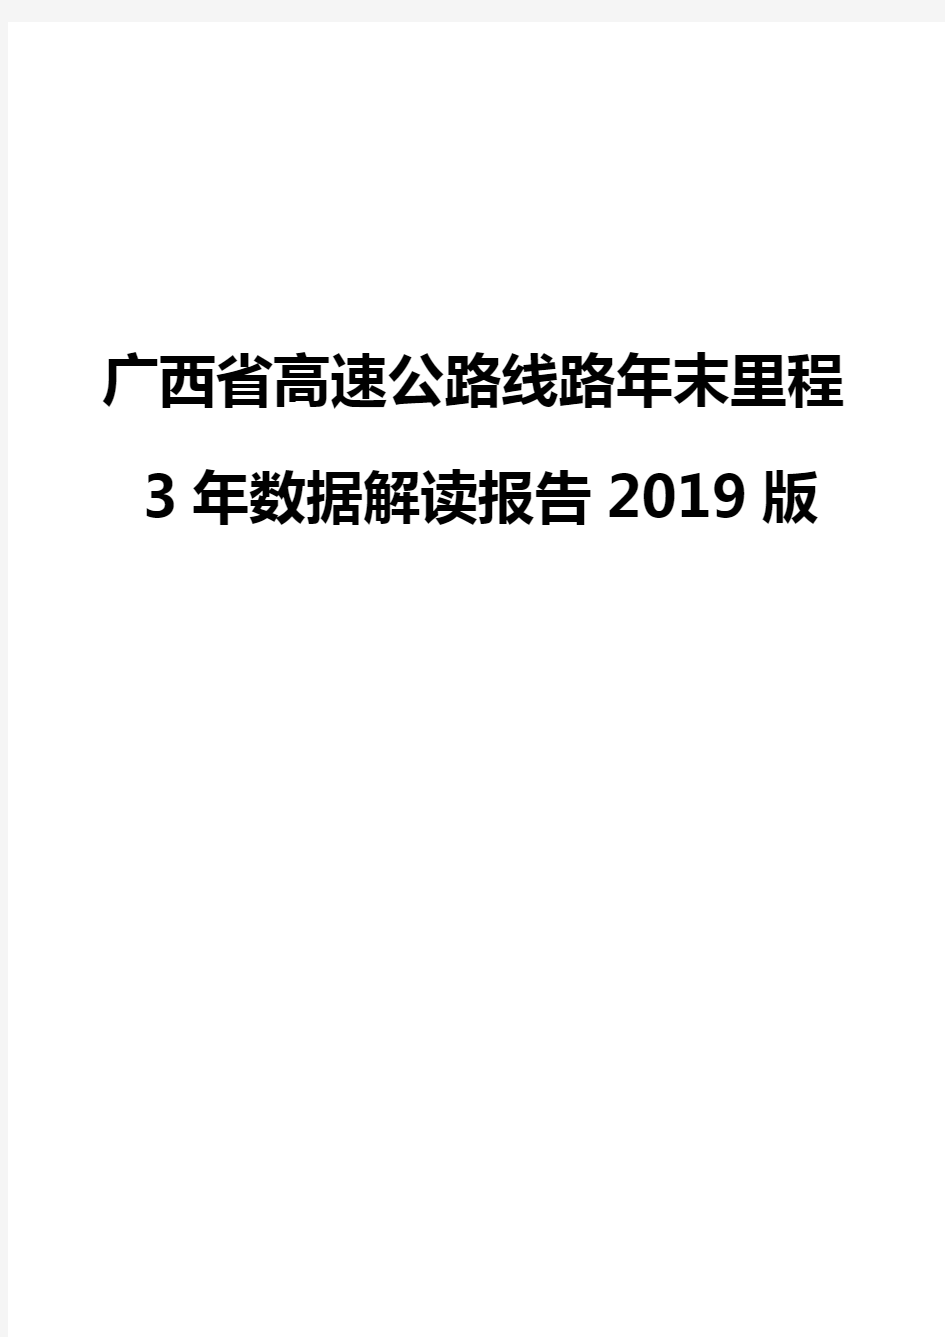 广西省高速公路线路年末里程3年数据解读报告2019版